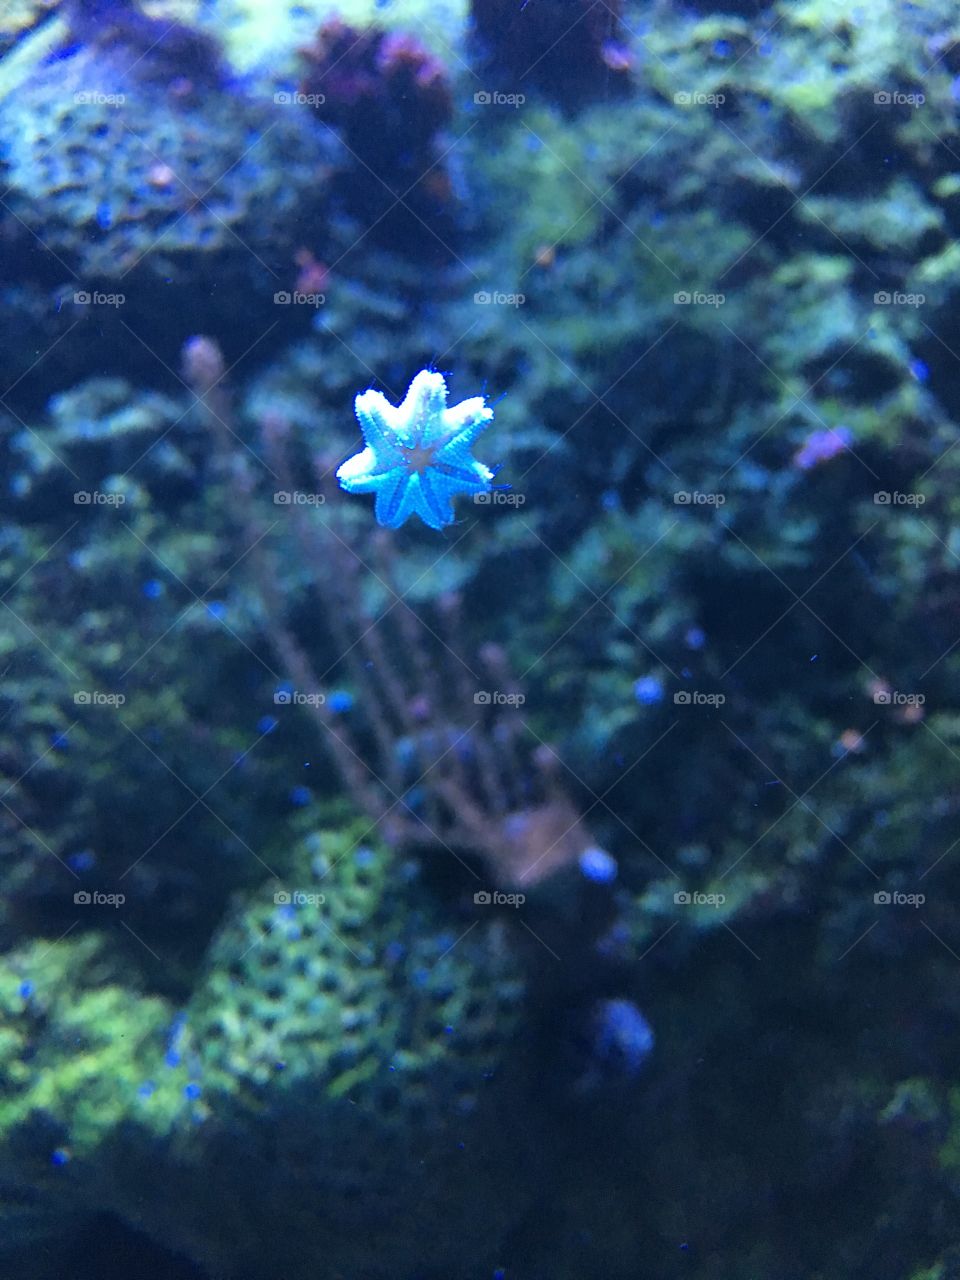 Baby starfish